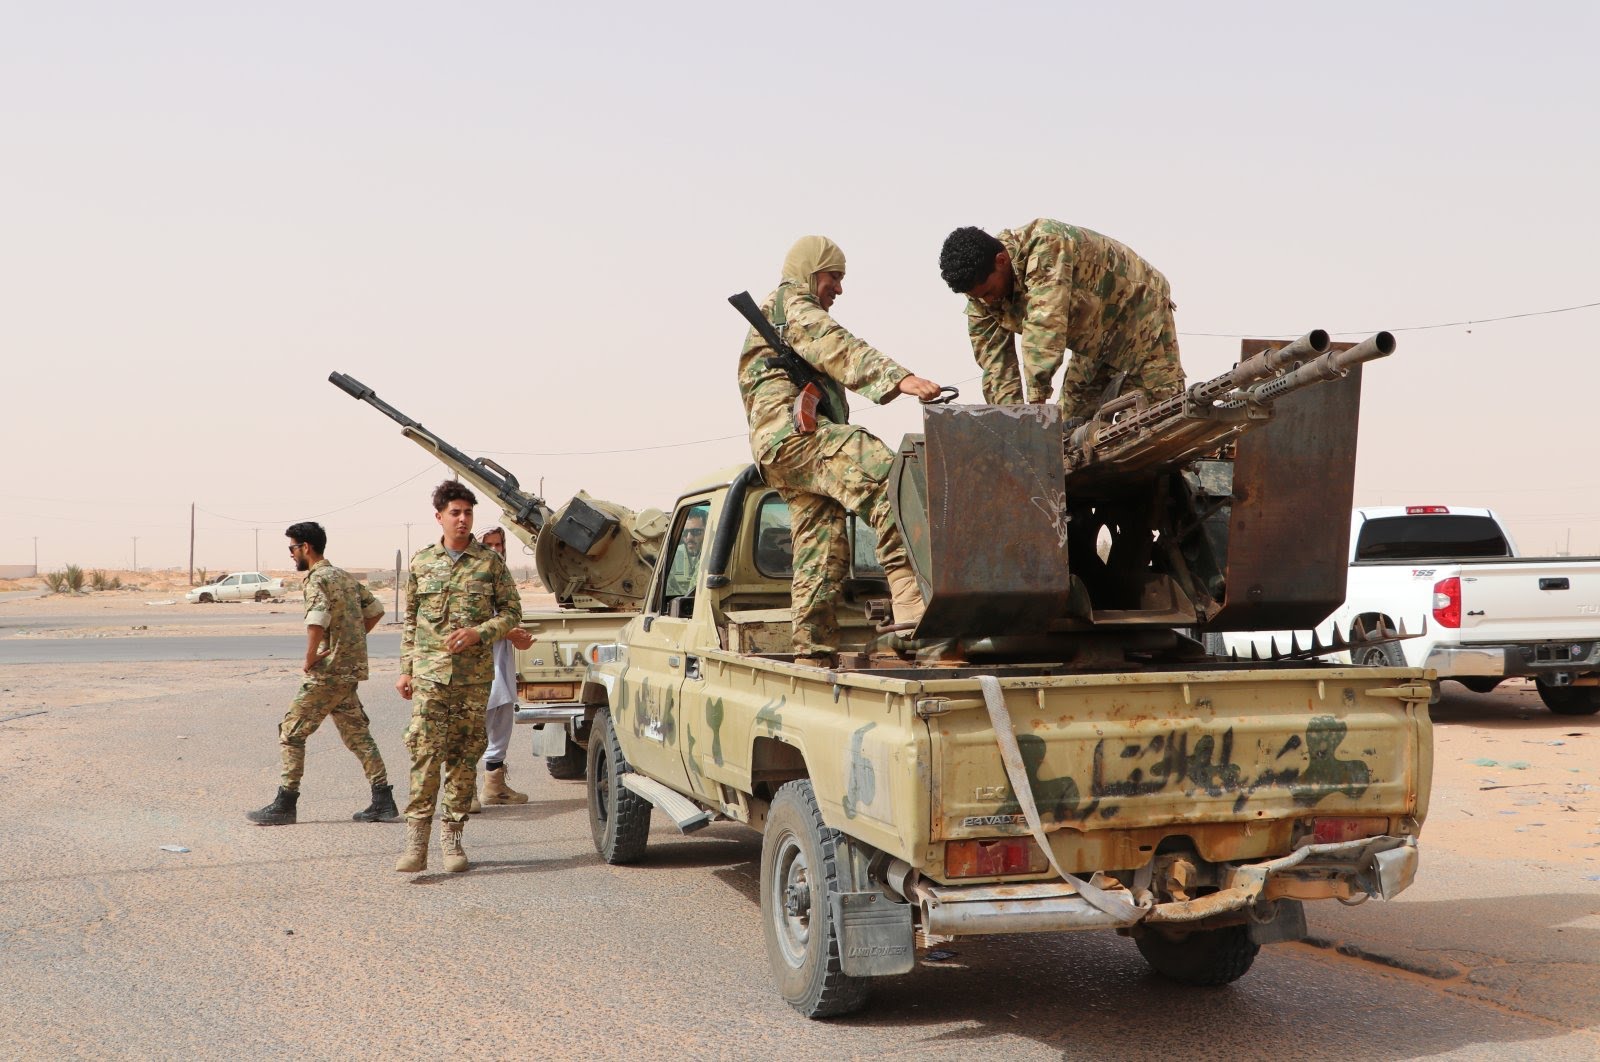 Military men in Libya PHOTO/Daily Sabah